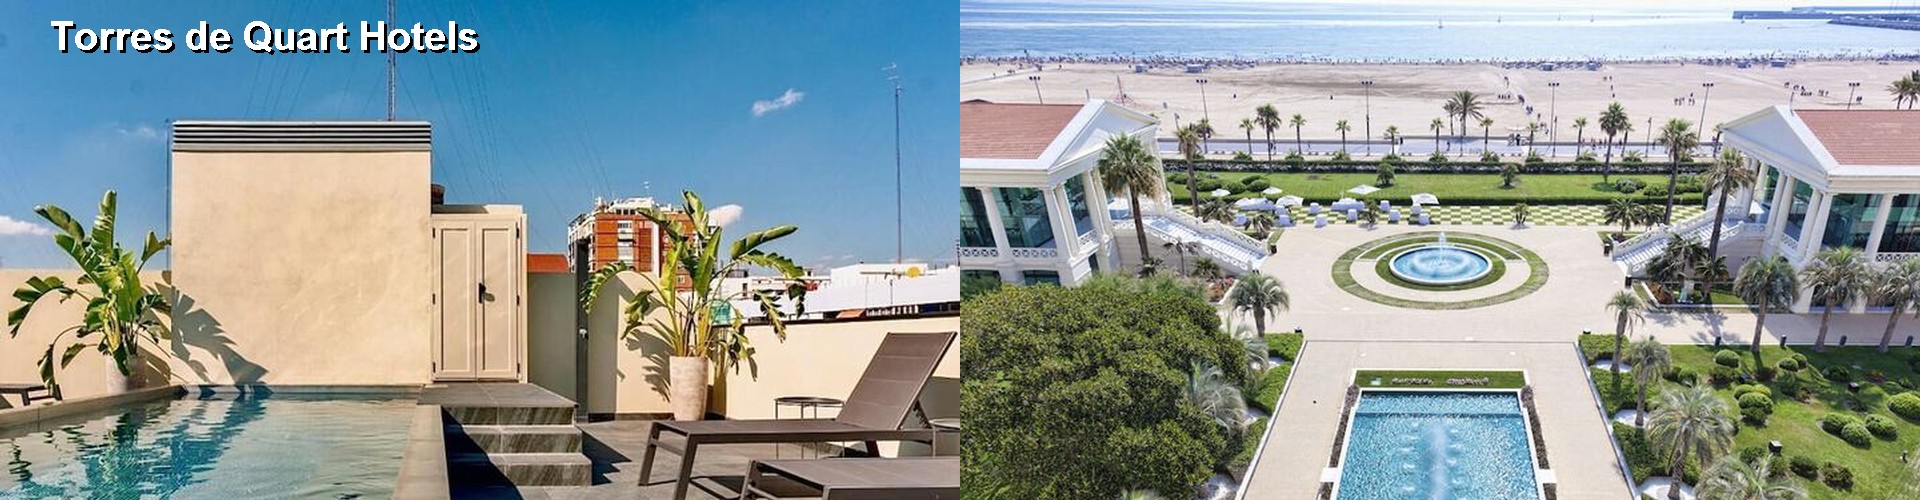 5 Best Hotels near Torres de Quart